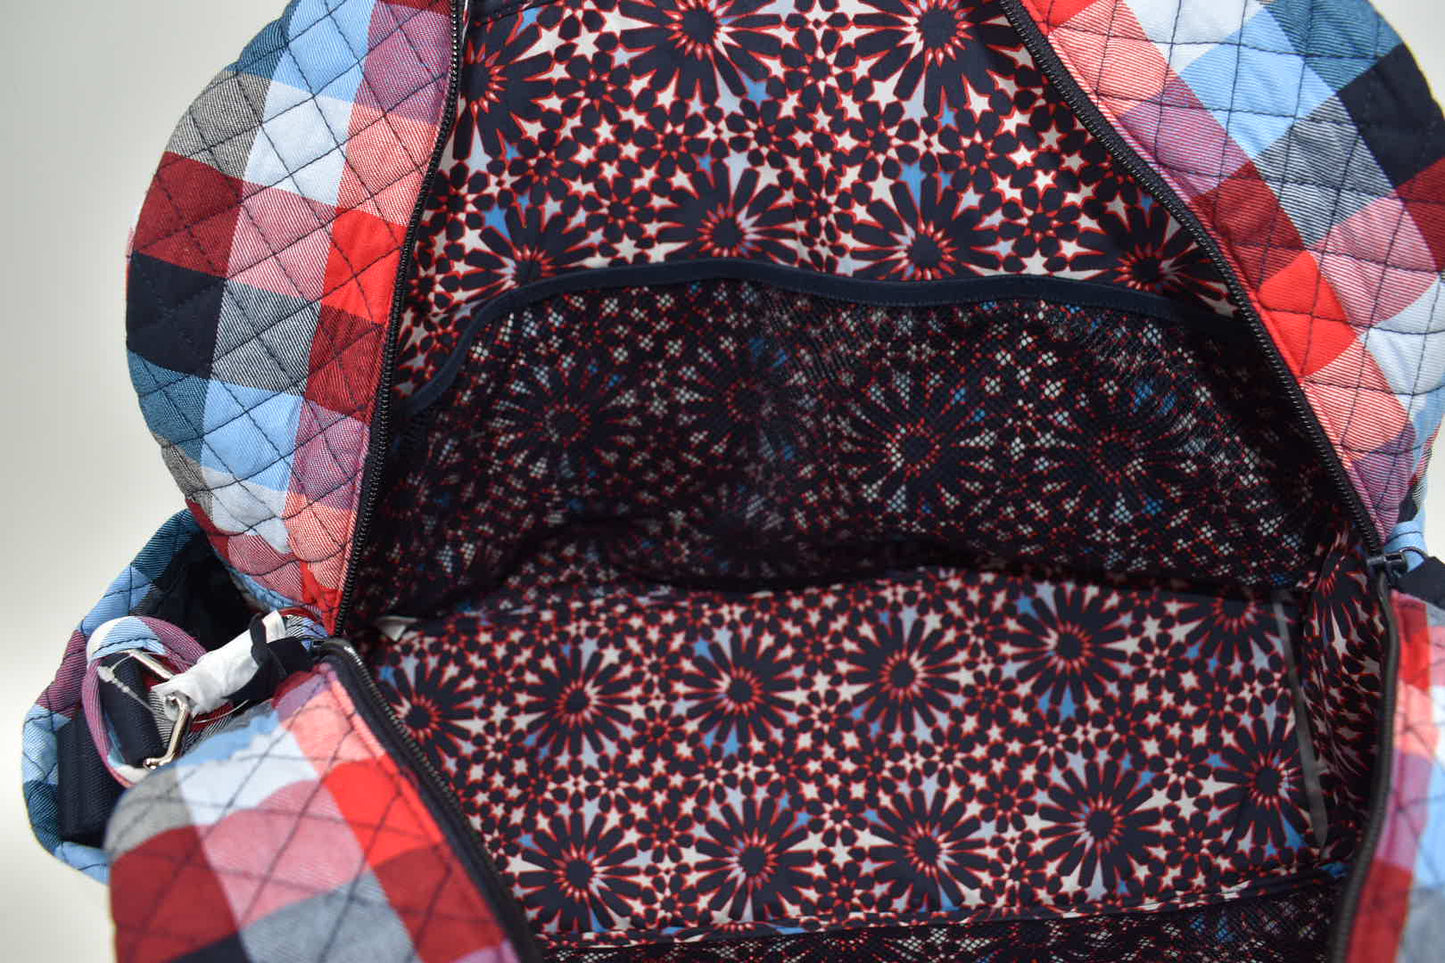 Vera Bradley Weekender Travel Bag in "Patriotic Plaid" Pattern